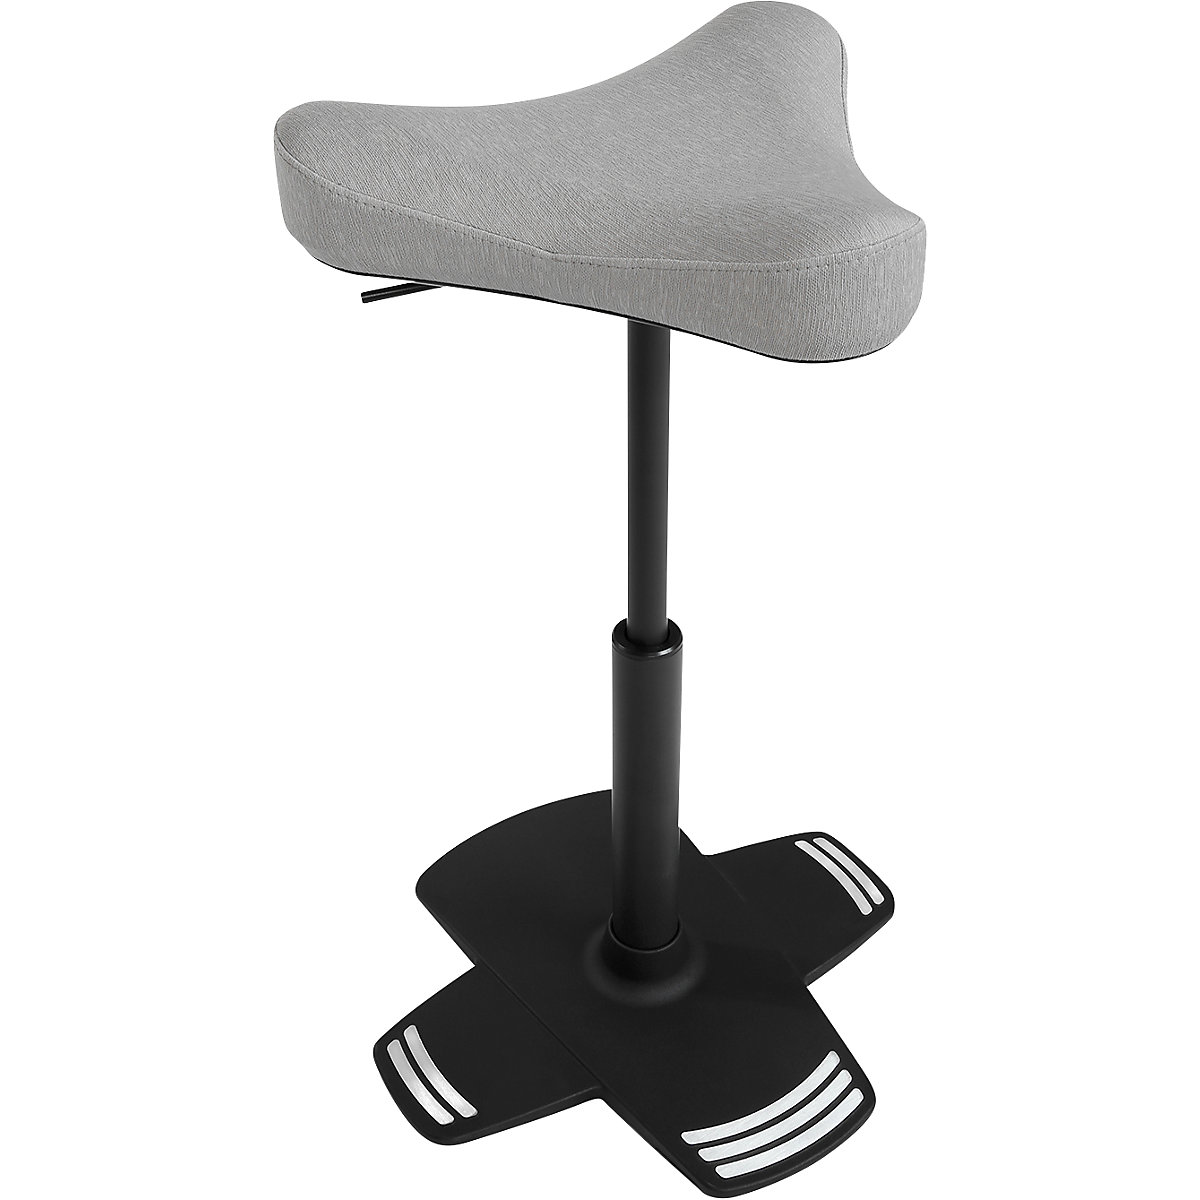 Visoki stolac SITNESS FALCON – Topstar, s ergonomski oblikovanim sedlastim sjedalom, presvlaka u sivoj boji-5